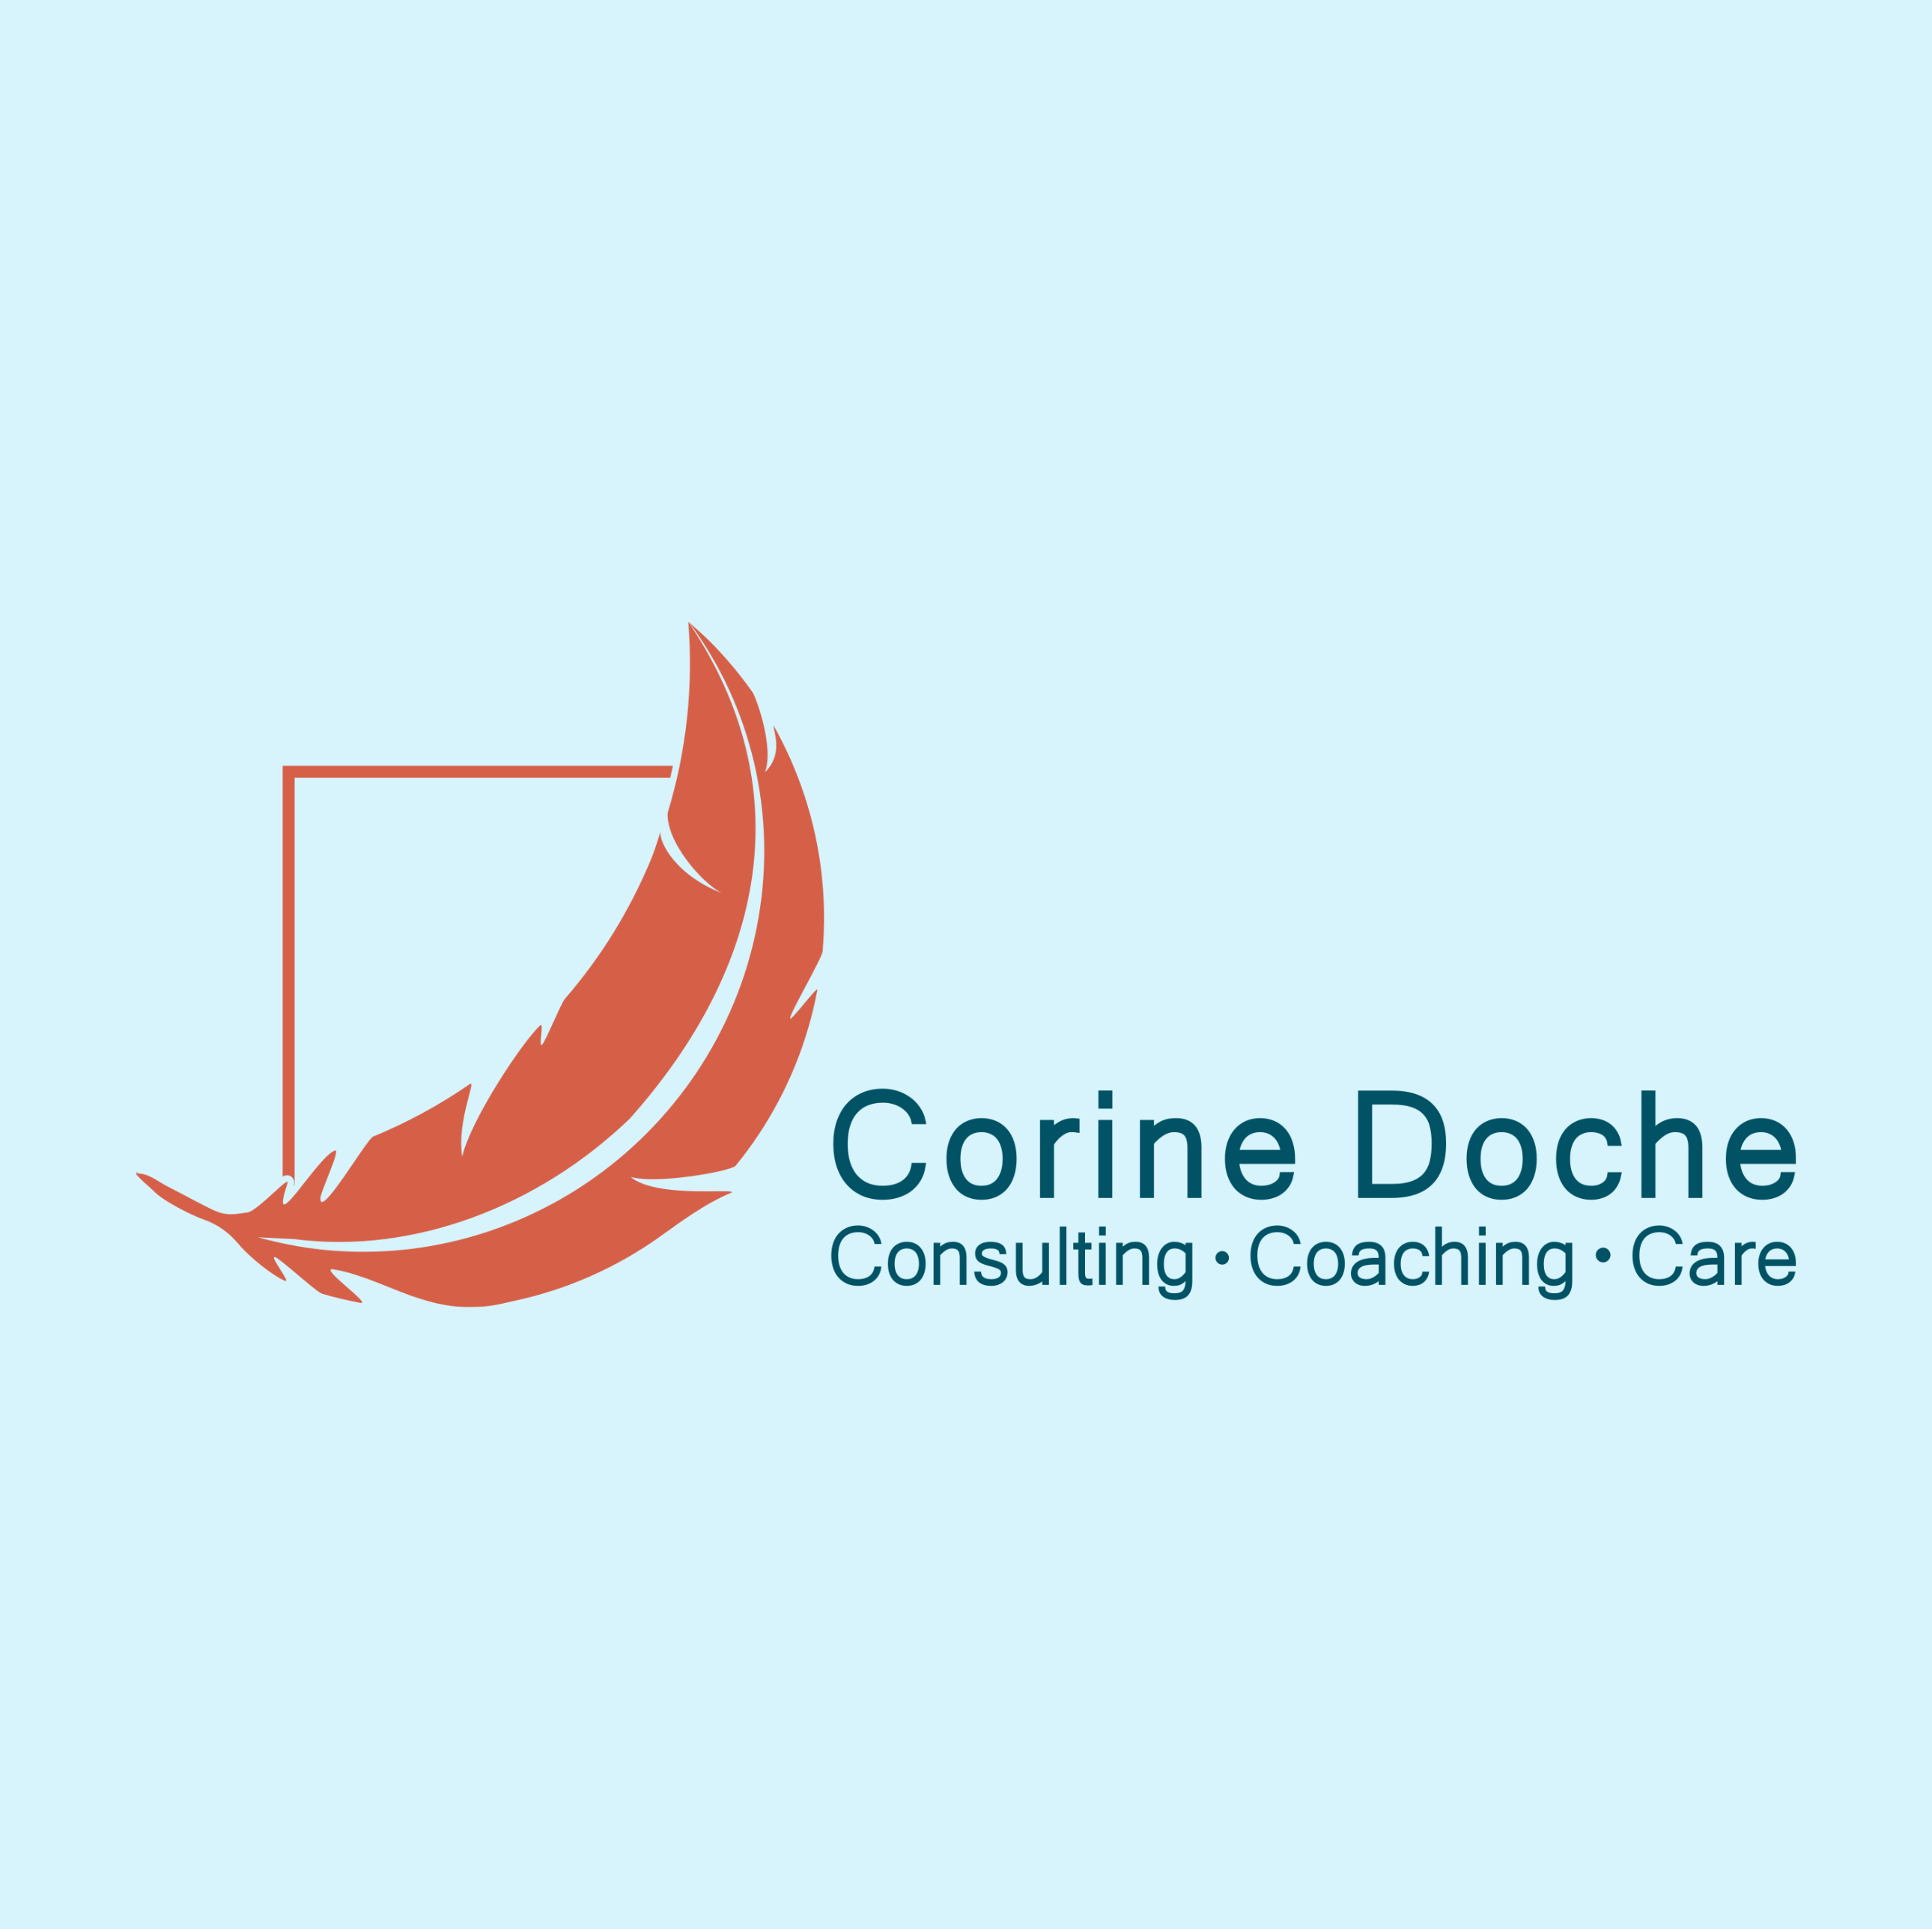 Corine Doche